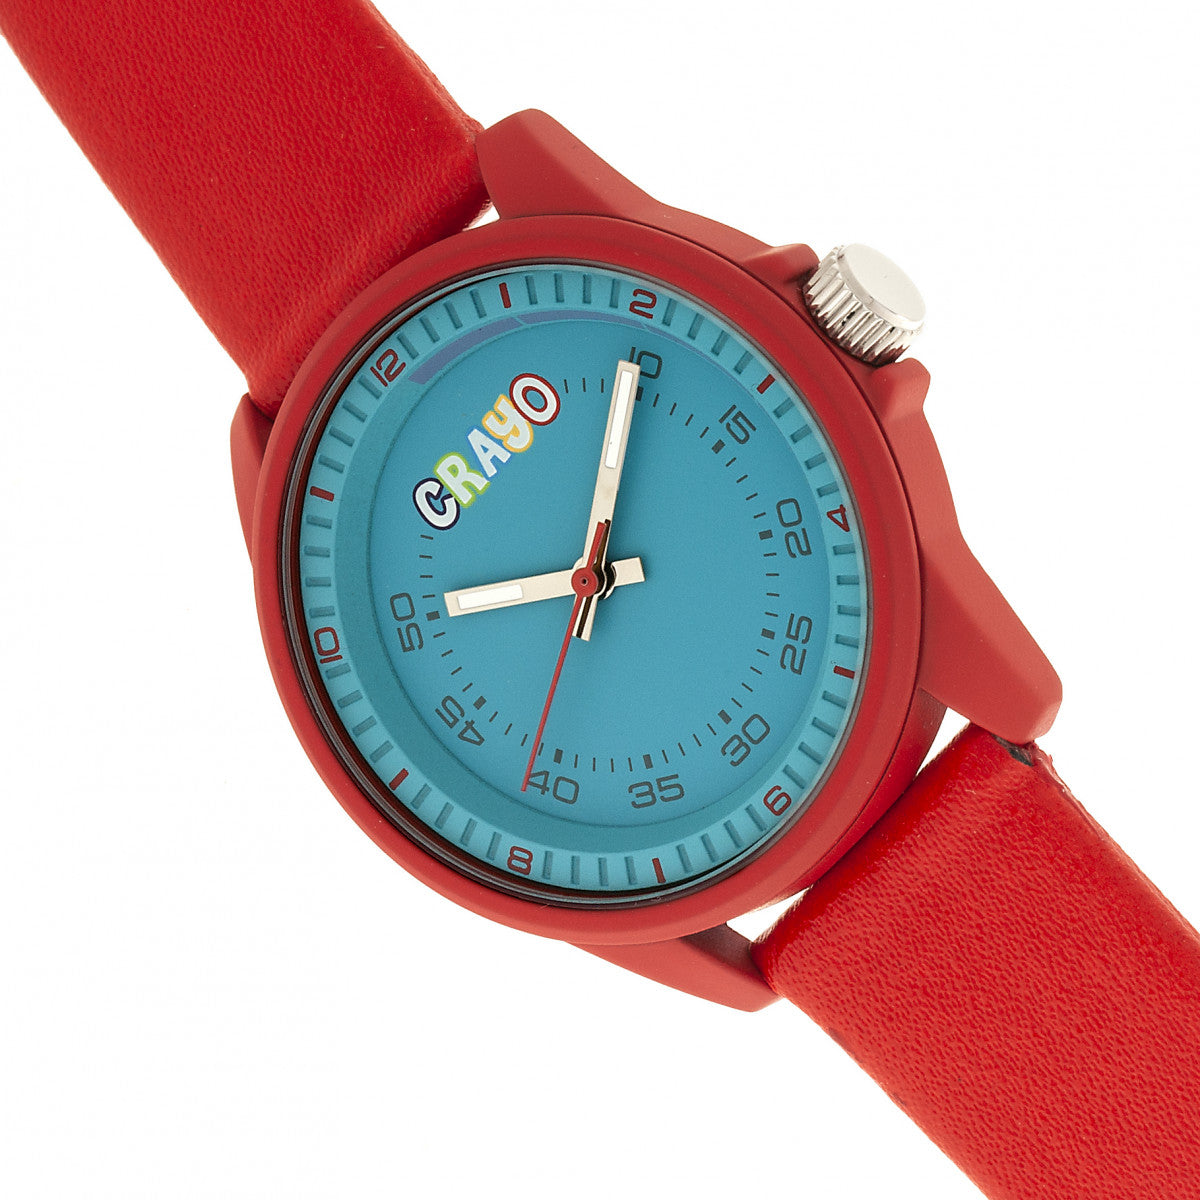 Crayo Jolt Unisex Watch - Red - CRACR4902